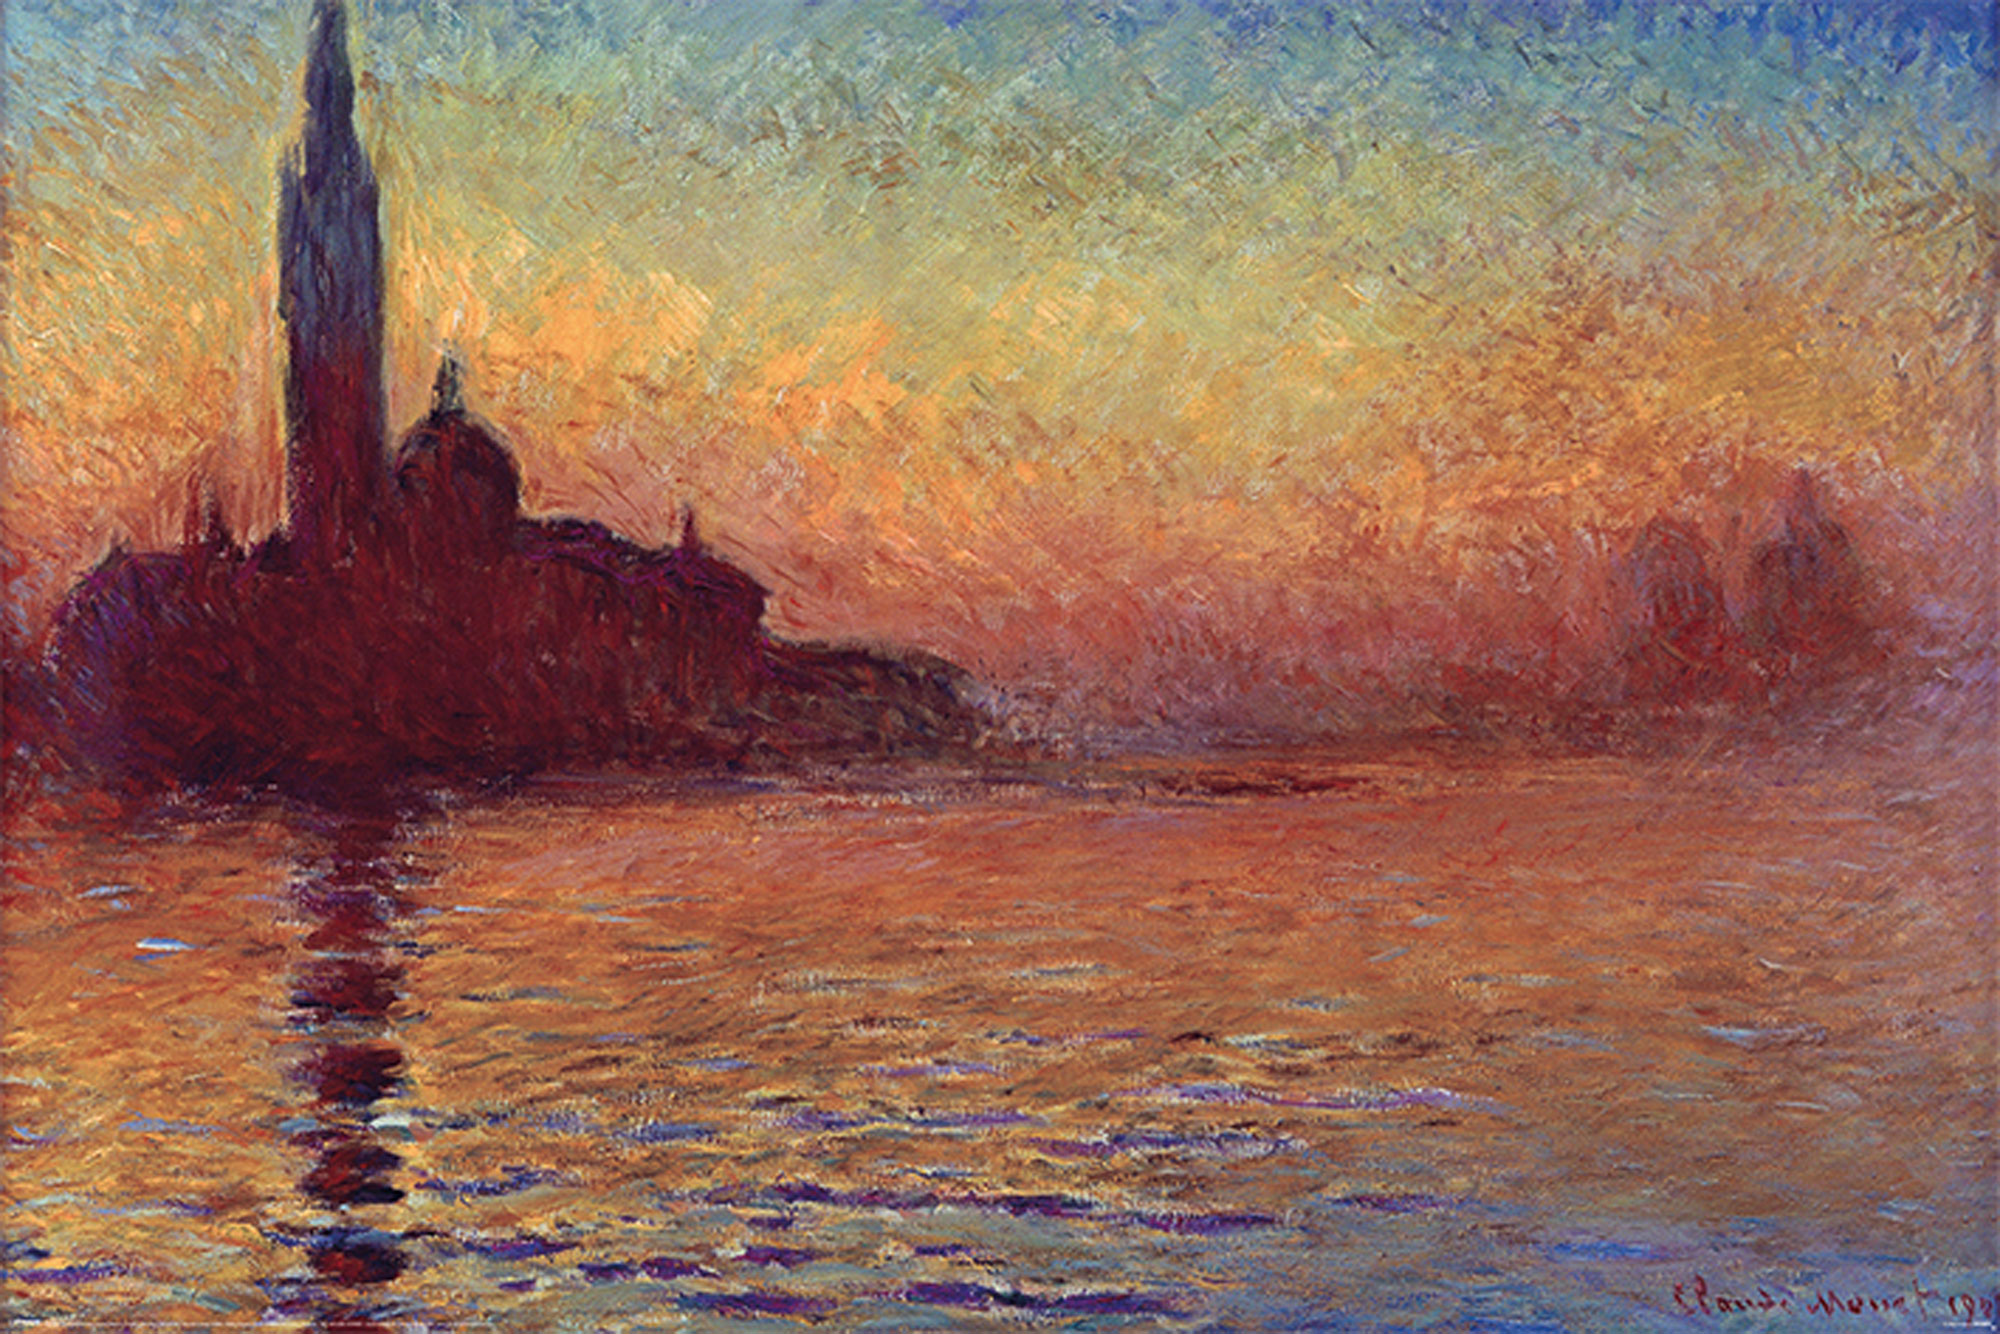 Dusk at Claude Monet, Maggiore - Giorgio San